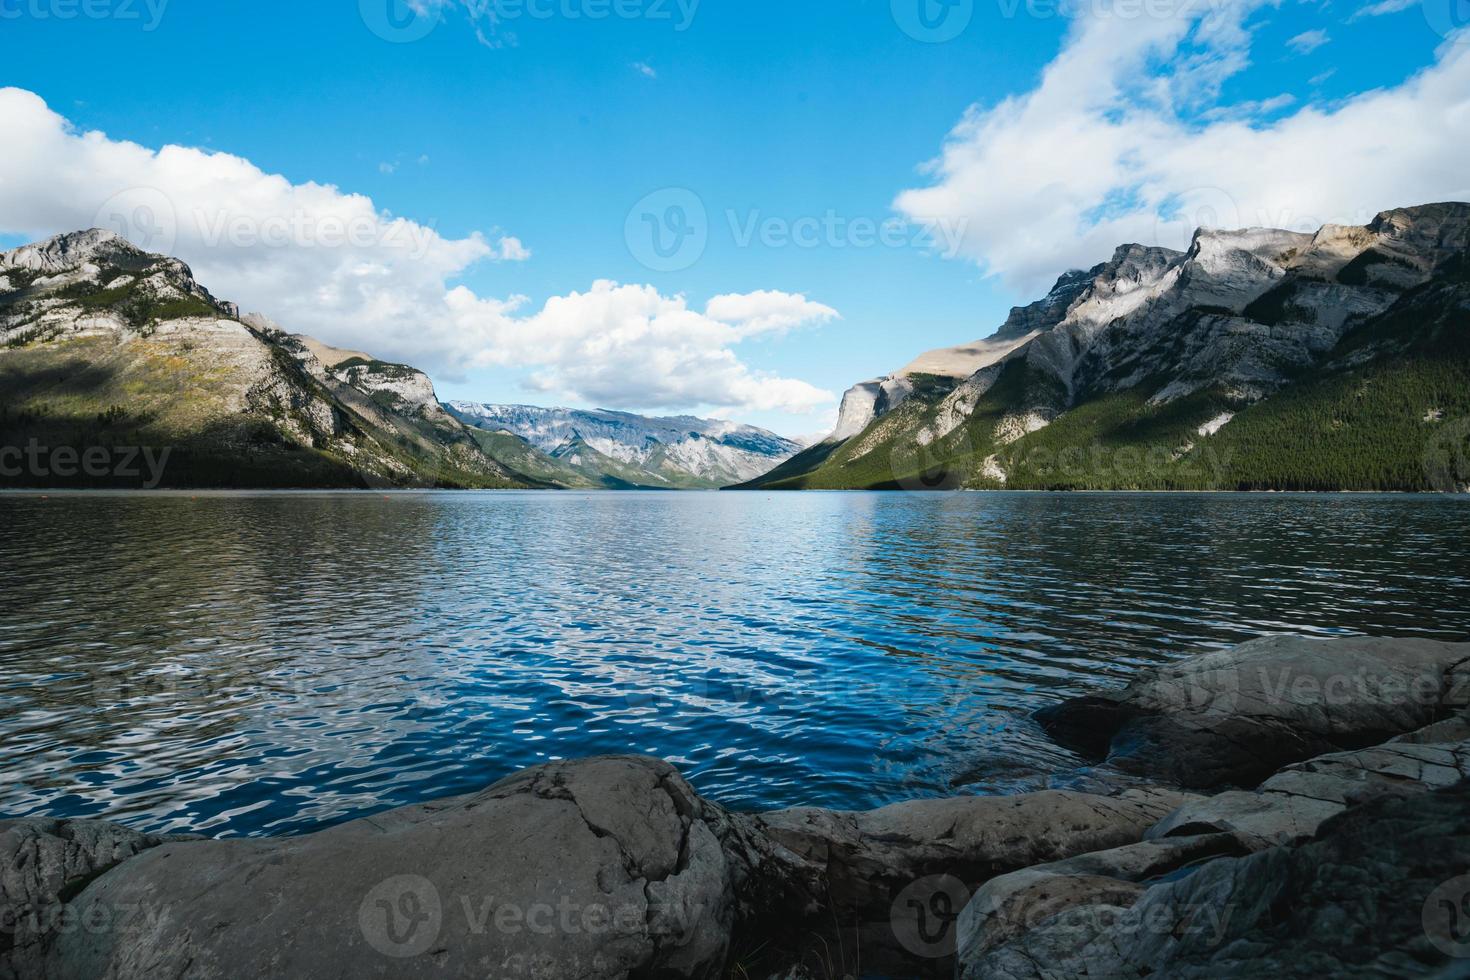 sjö minnewanka i alberta, kanada på en molnig dag med fantastisk bergen och vatten reflektioner foto